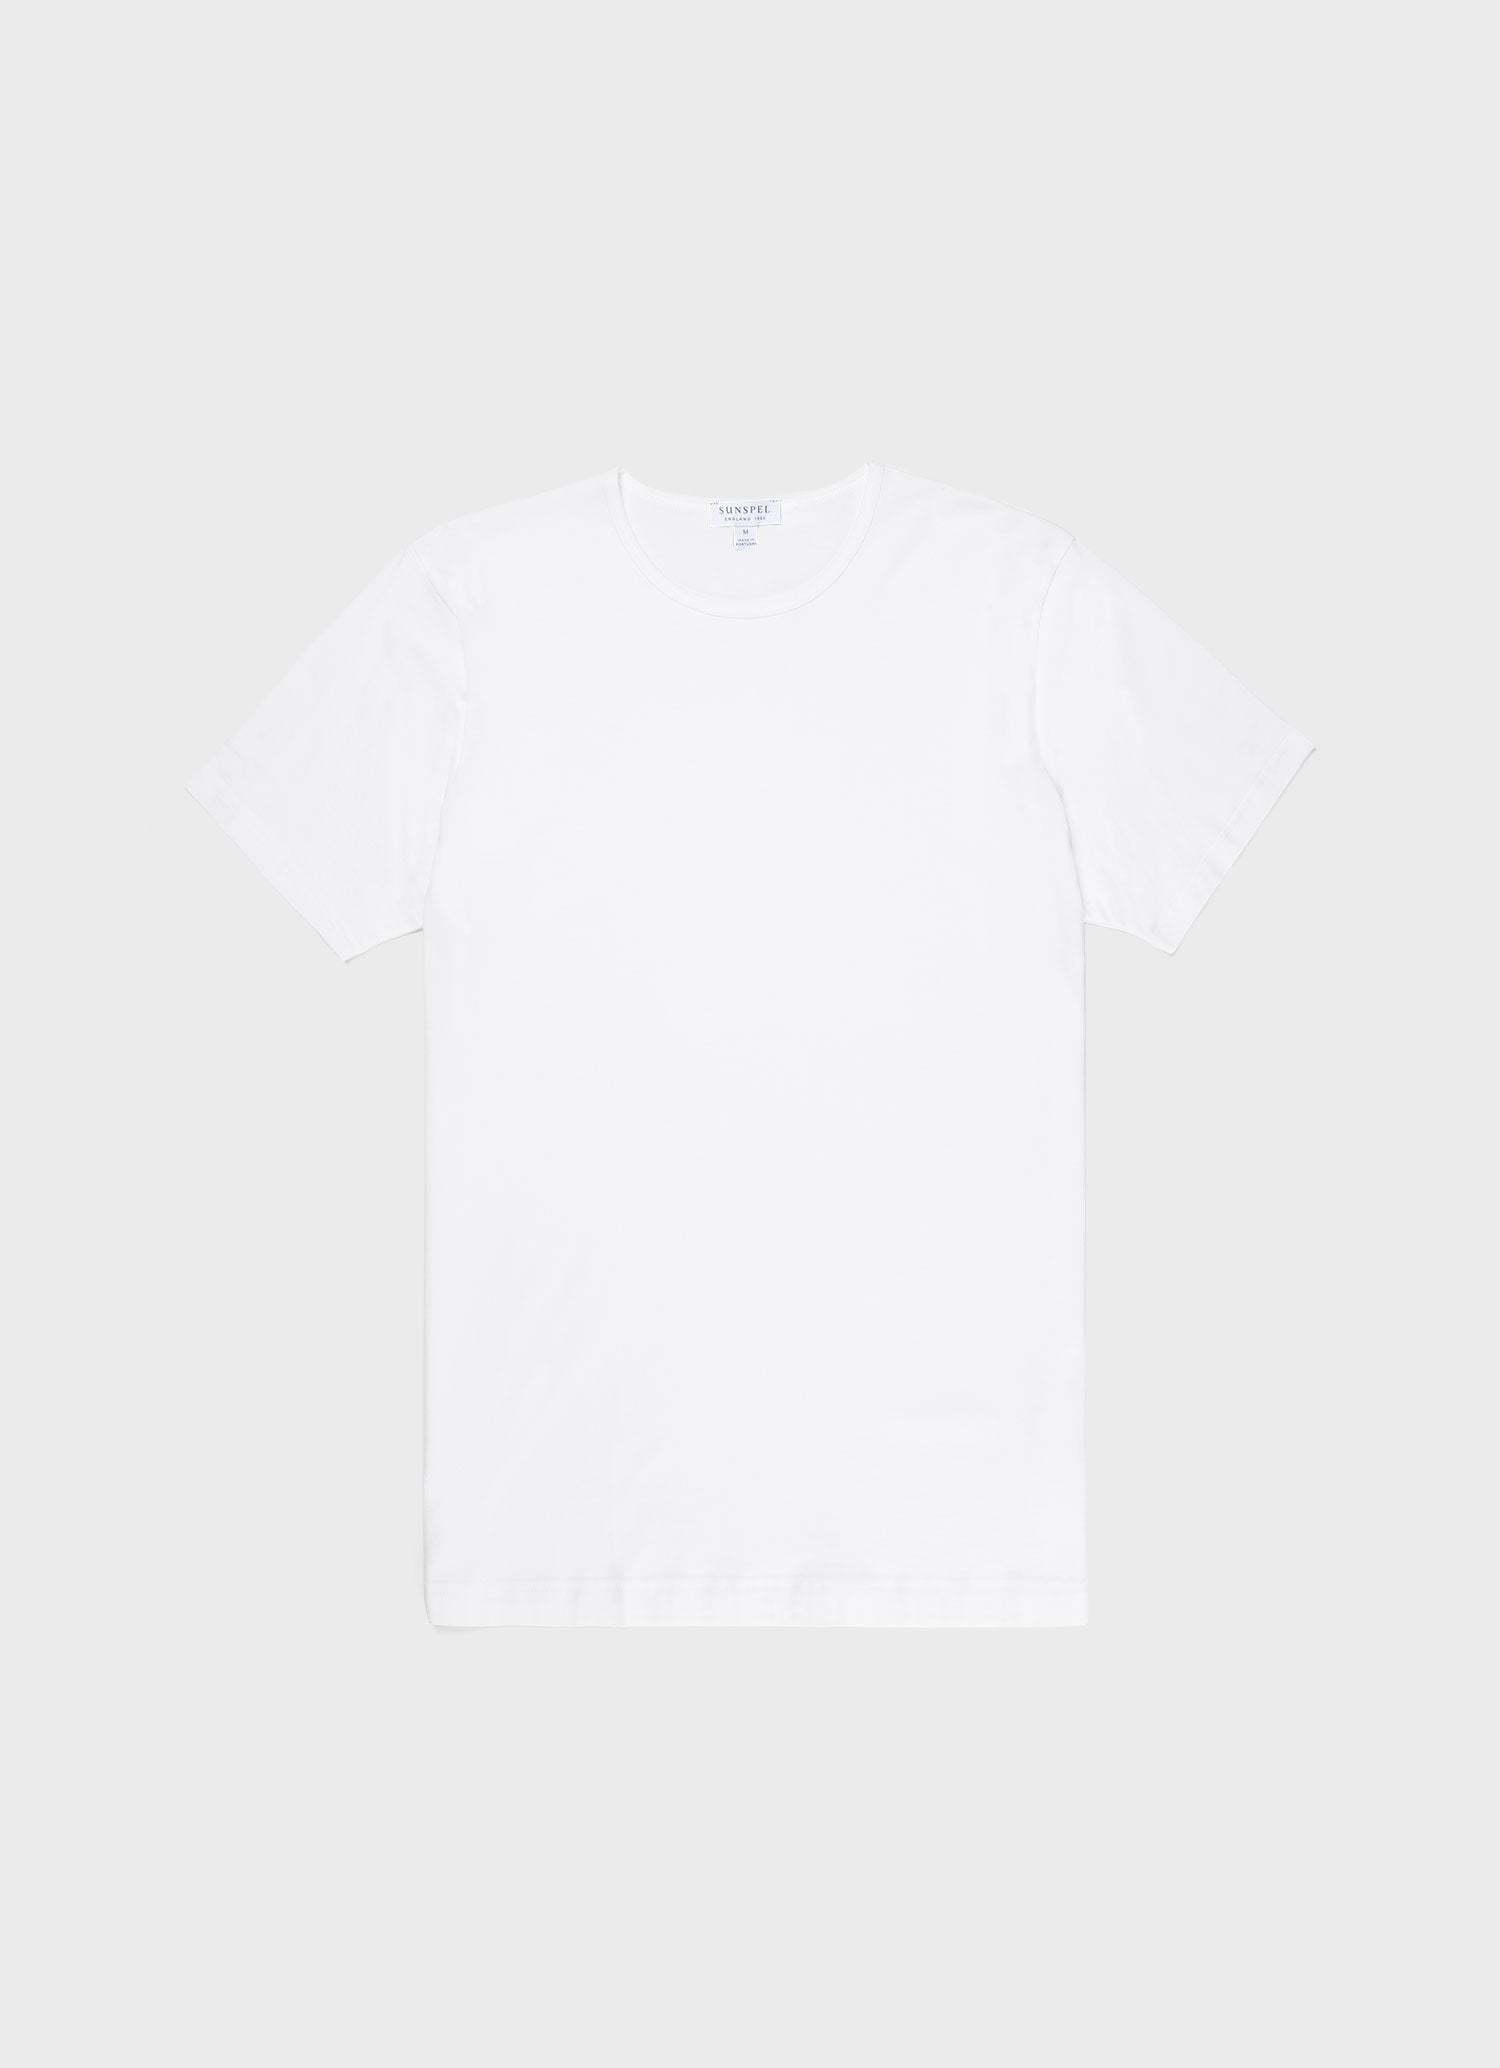 Men's Superfine Cotton Underwear T-shirt in White | Sunspel